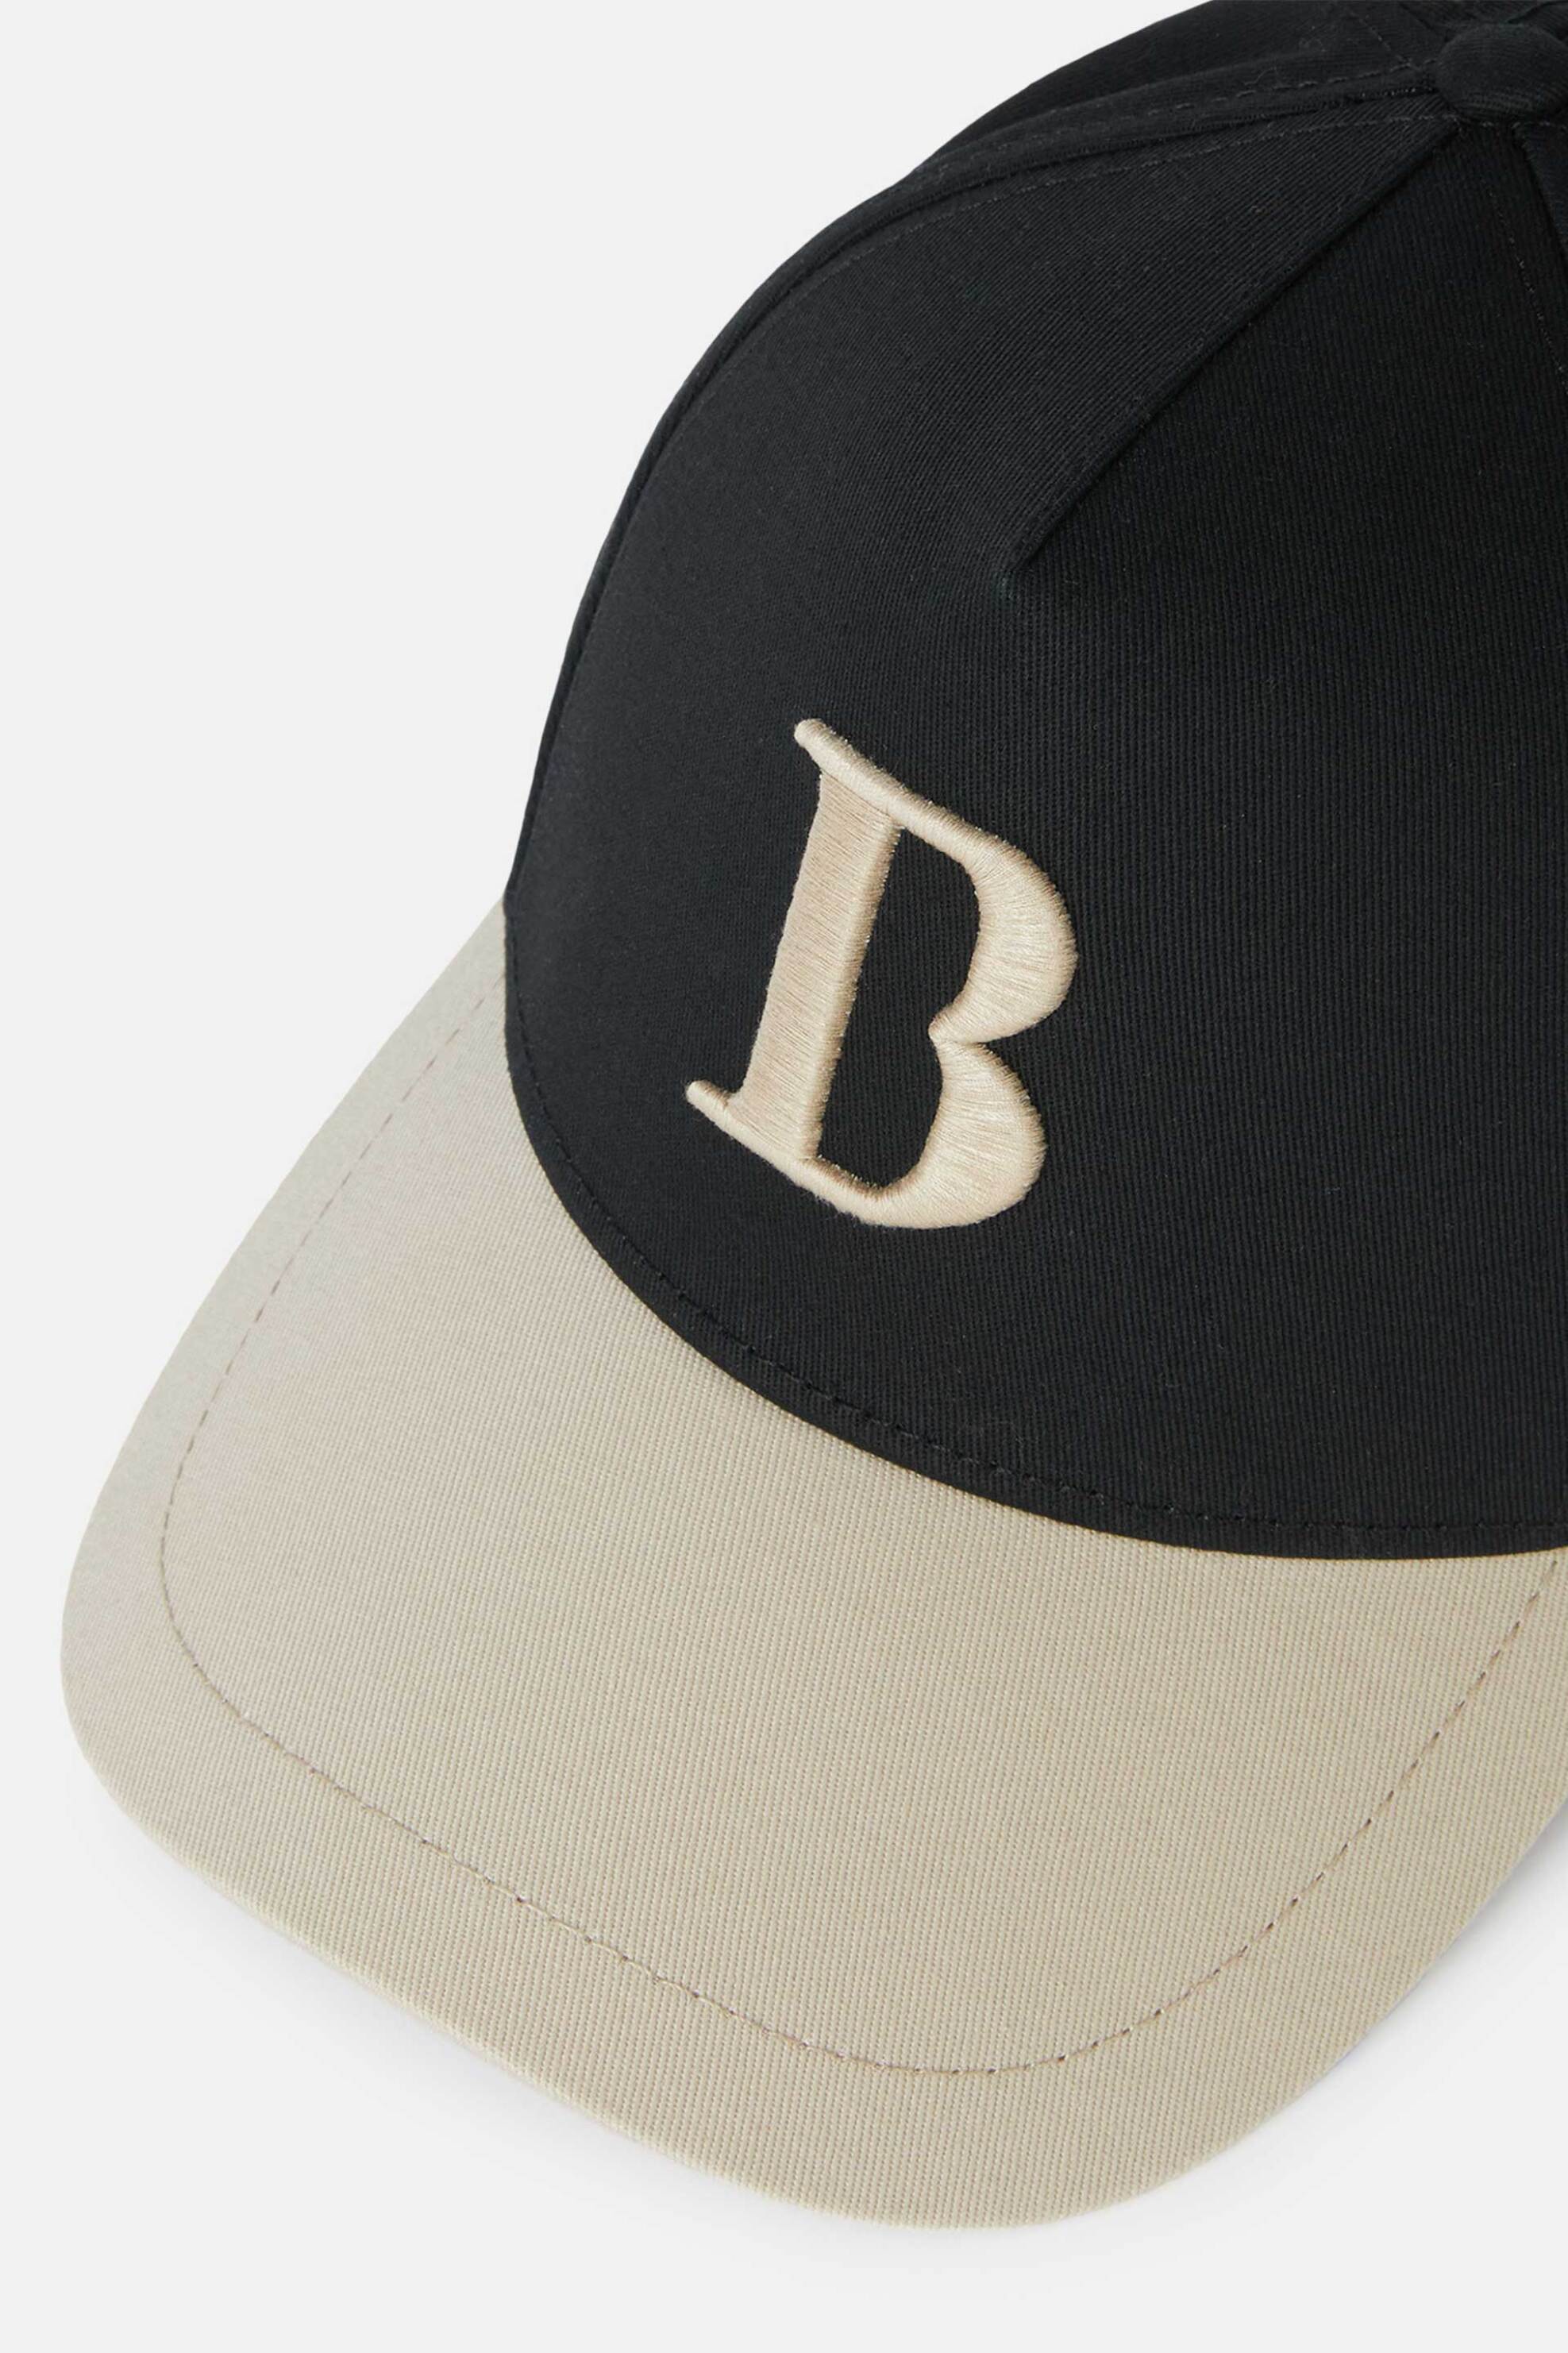 Ανδρική Μόδα > Ανδρικά Αξεσουάρ > Ανδρικά Καπέλα & Σκούφοι Boggi Milano ανδρικό καπέλο με διχρωμία και κεντημένο λογότυπο - BO24P005603 Μαύρο